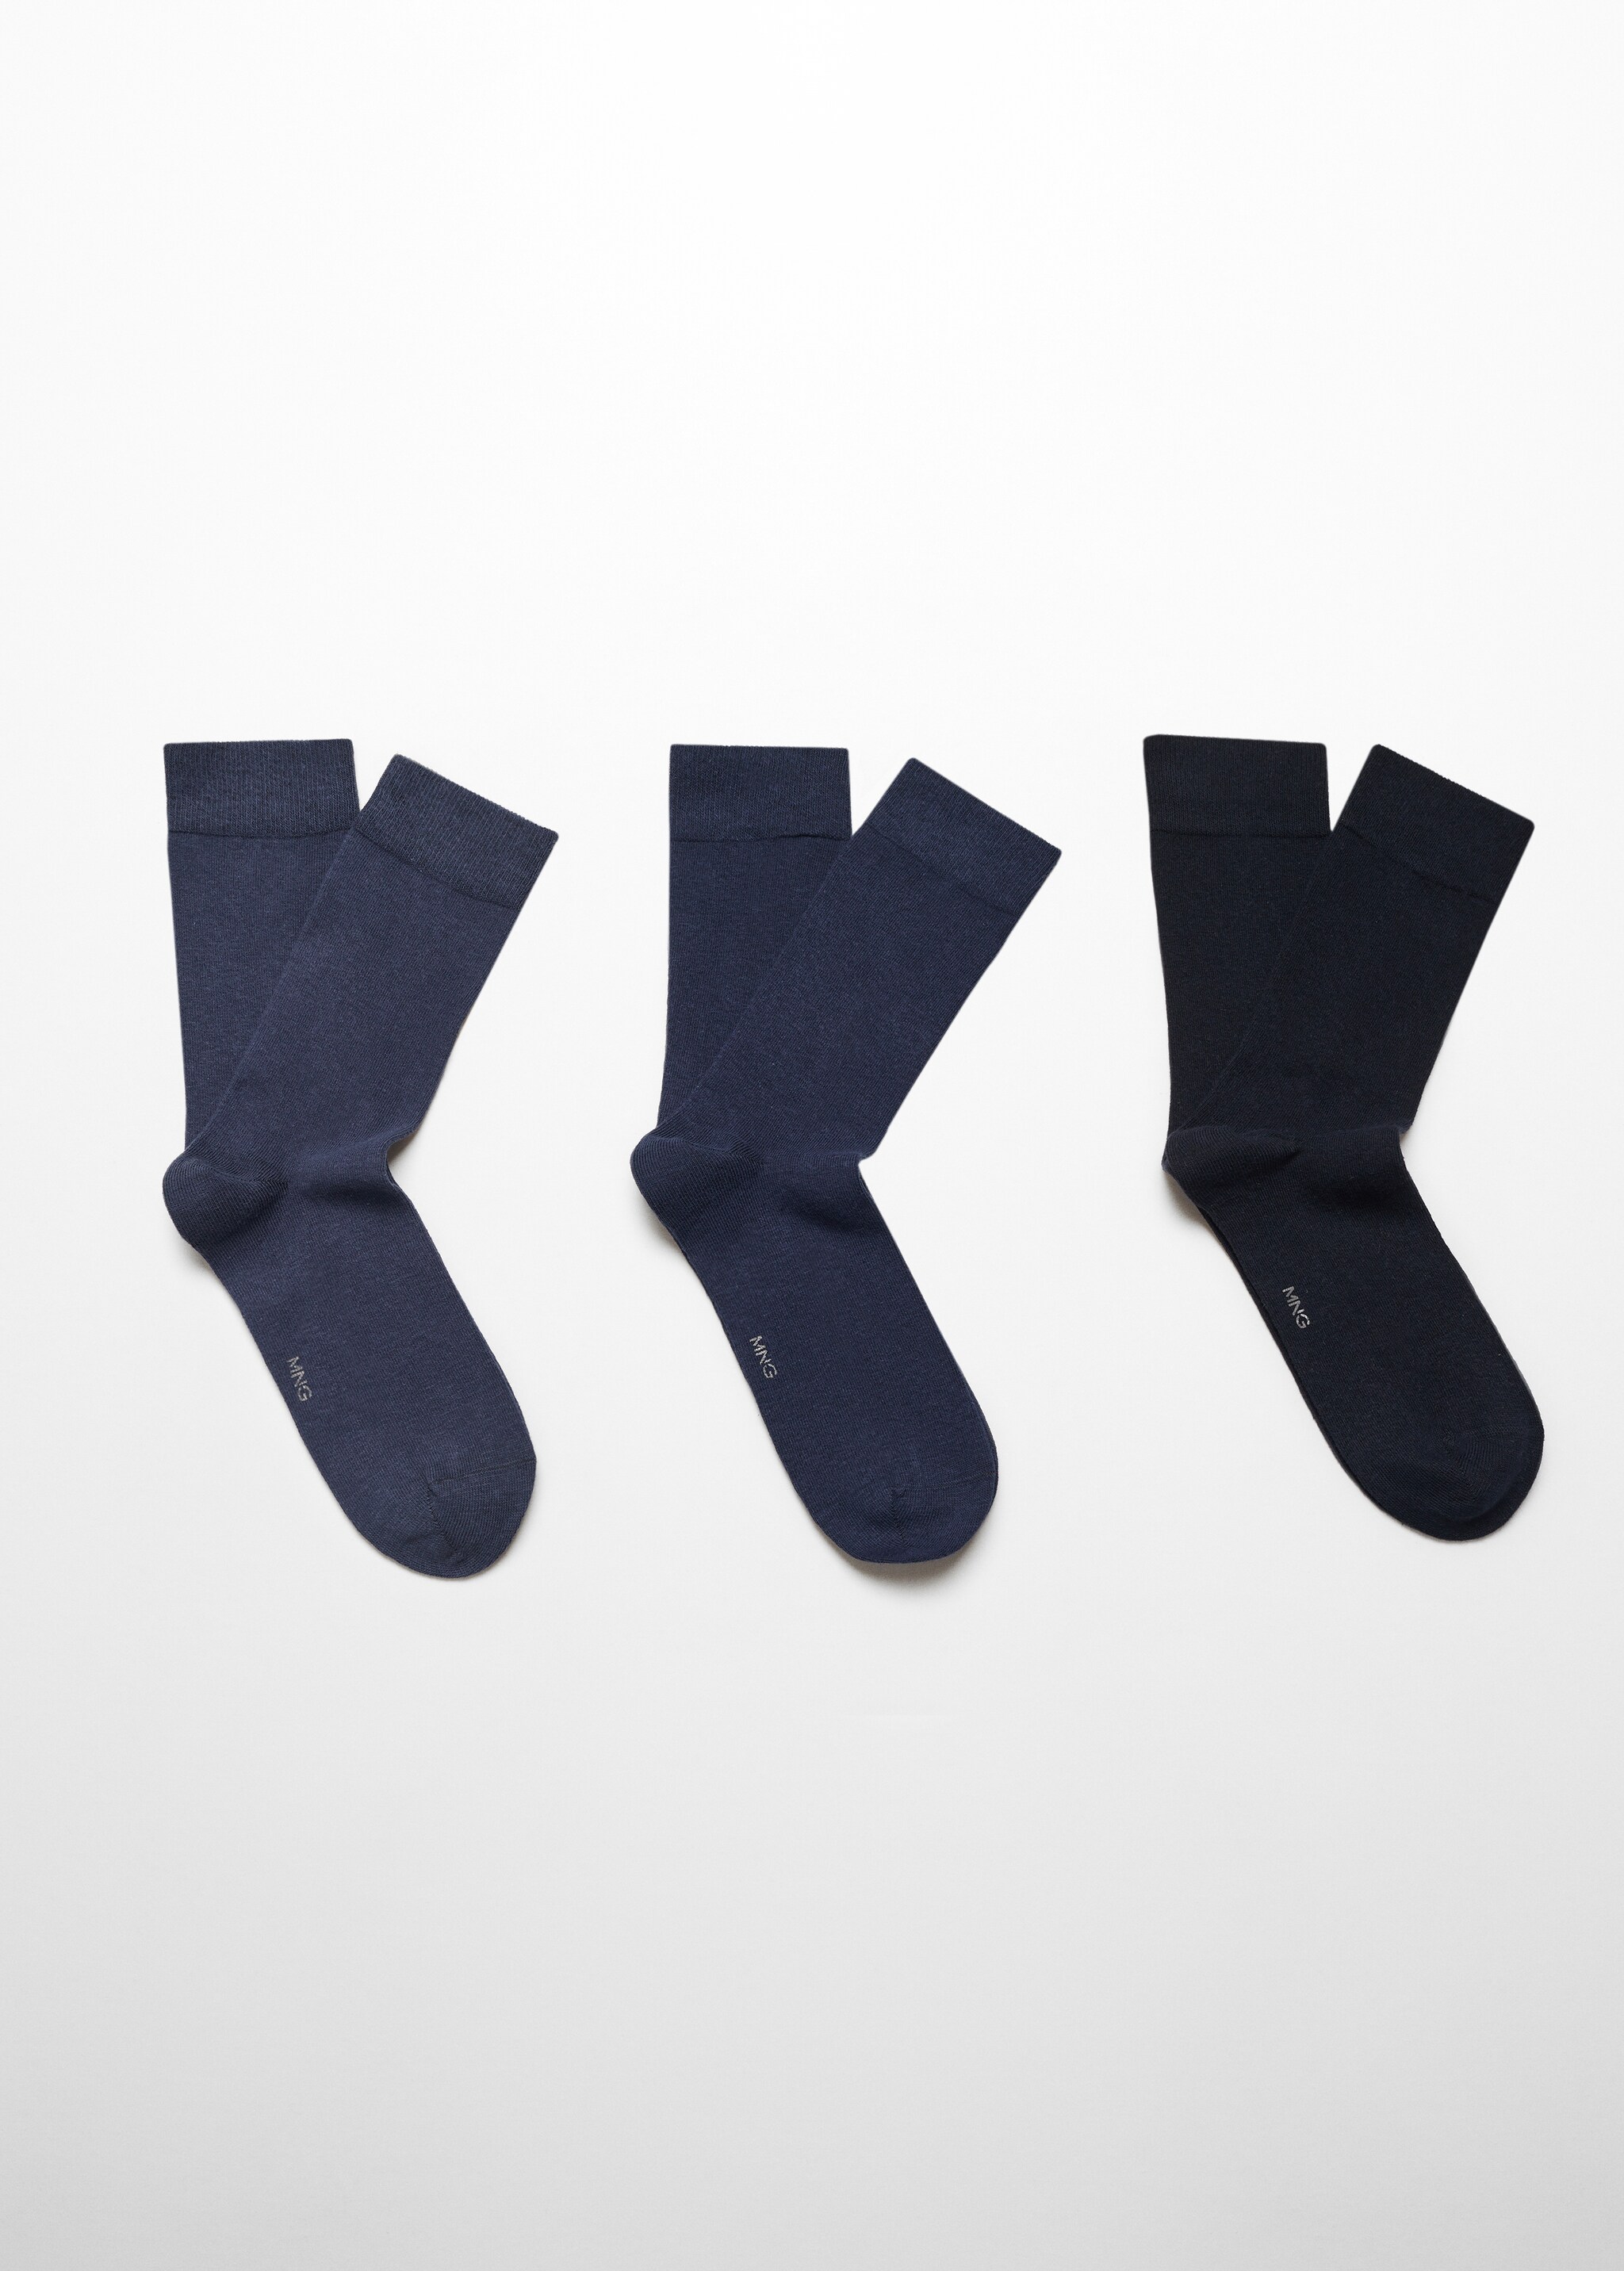 Pack 3 calzini cotone - Articolo senza modello